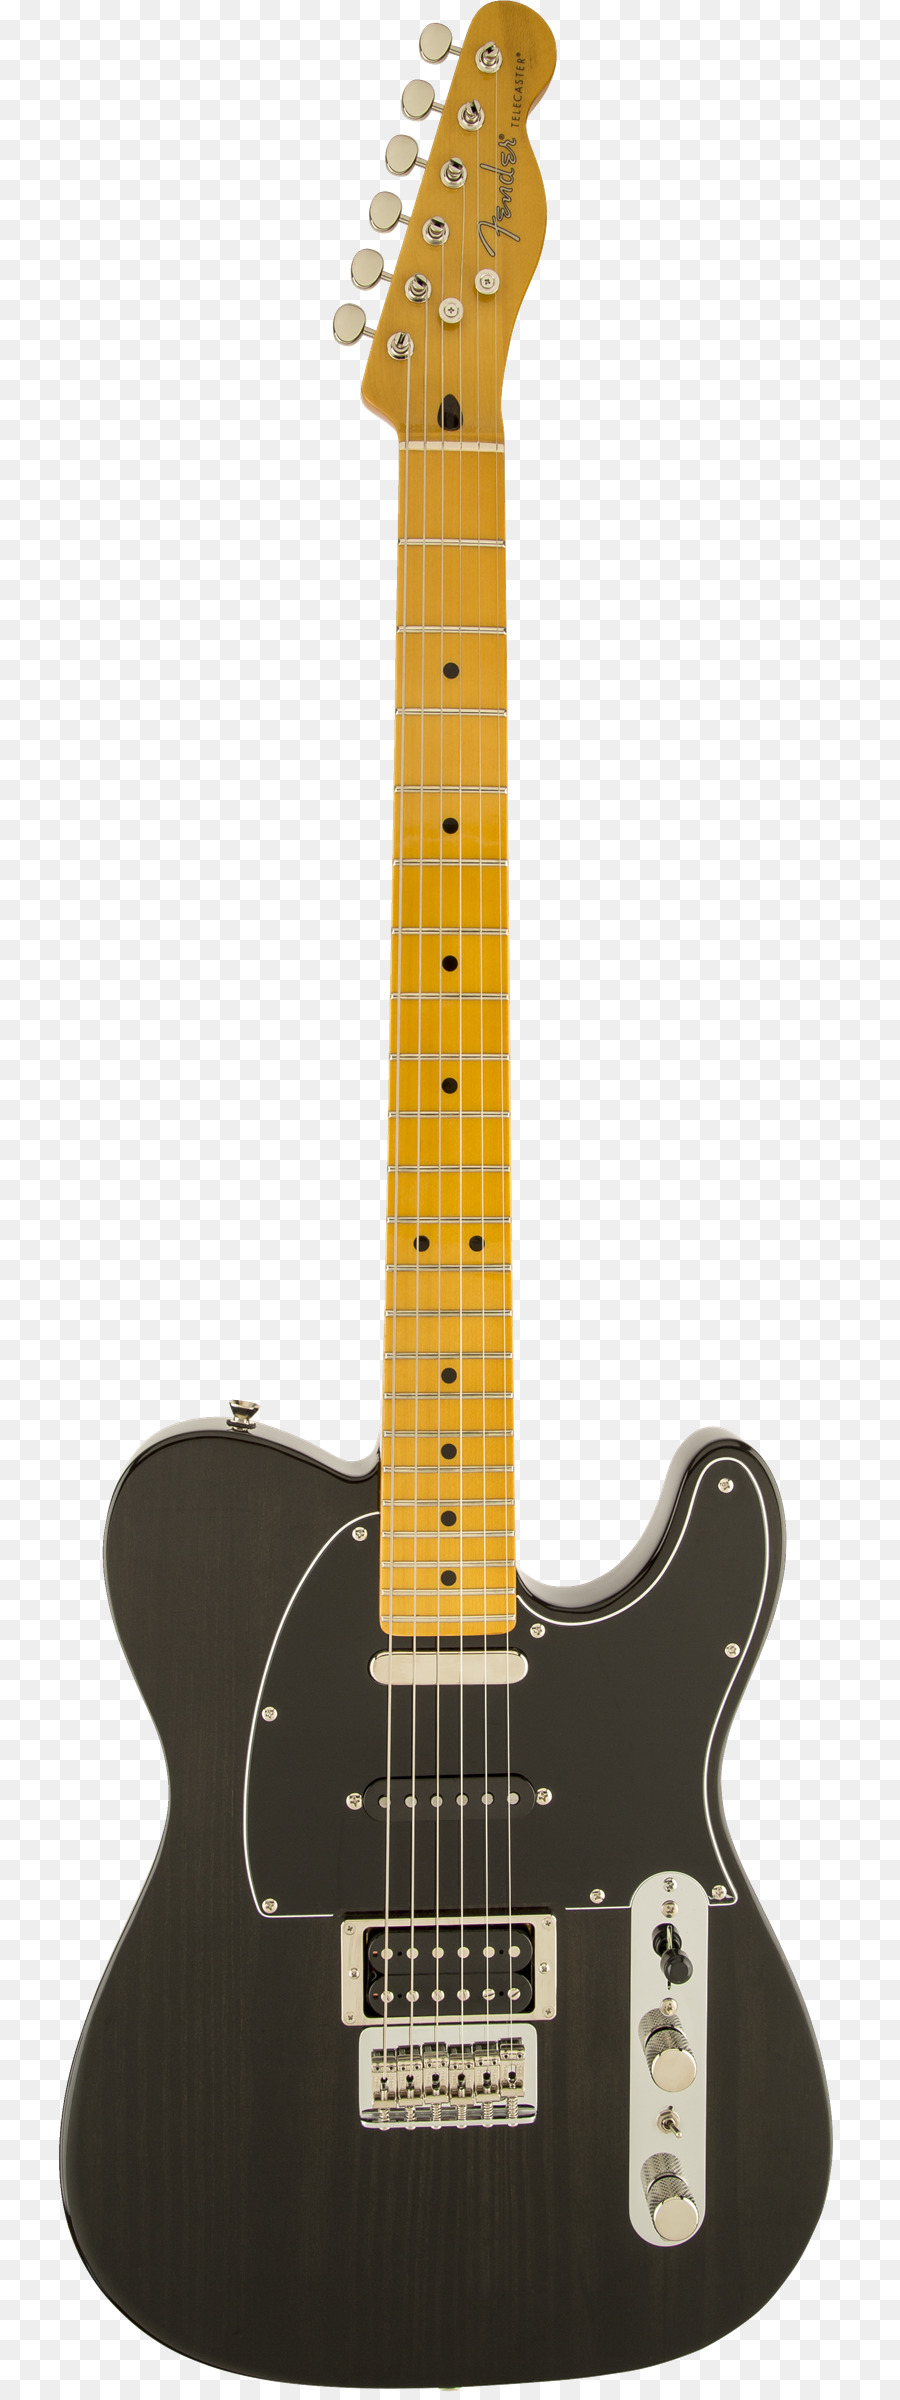 Fender St Sao guitar Điện sứ cô đơn Fender dụng Cụ âm Nhạc công Ty - cây guitar